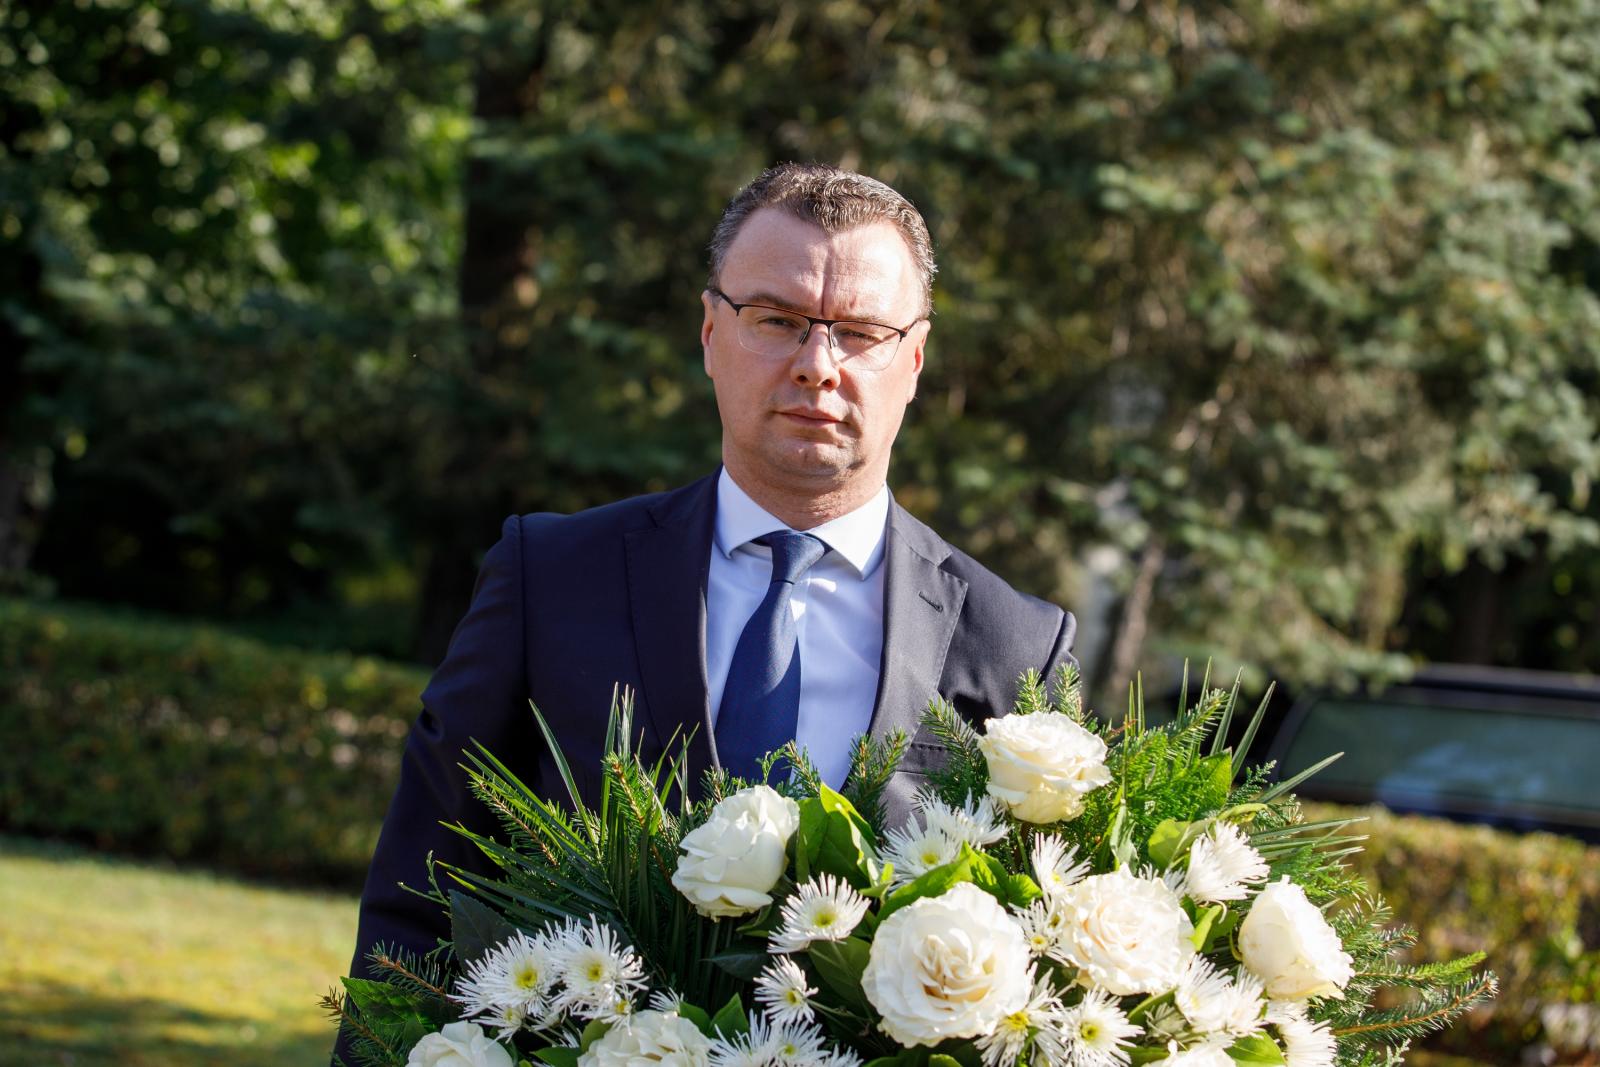 Latvijas pirmā iekšlietu ministra un Ievērojamā Latvijas valsts un sabiedriskā darbinieka Miķeļa Valtera mirstīgo atlieku pārapbedīšana Latvijā